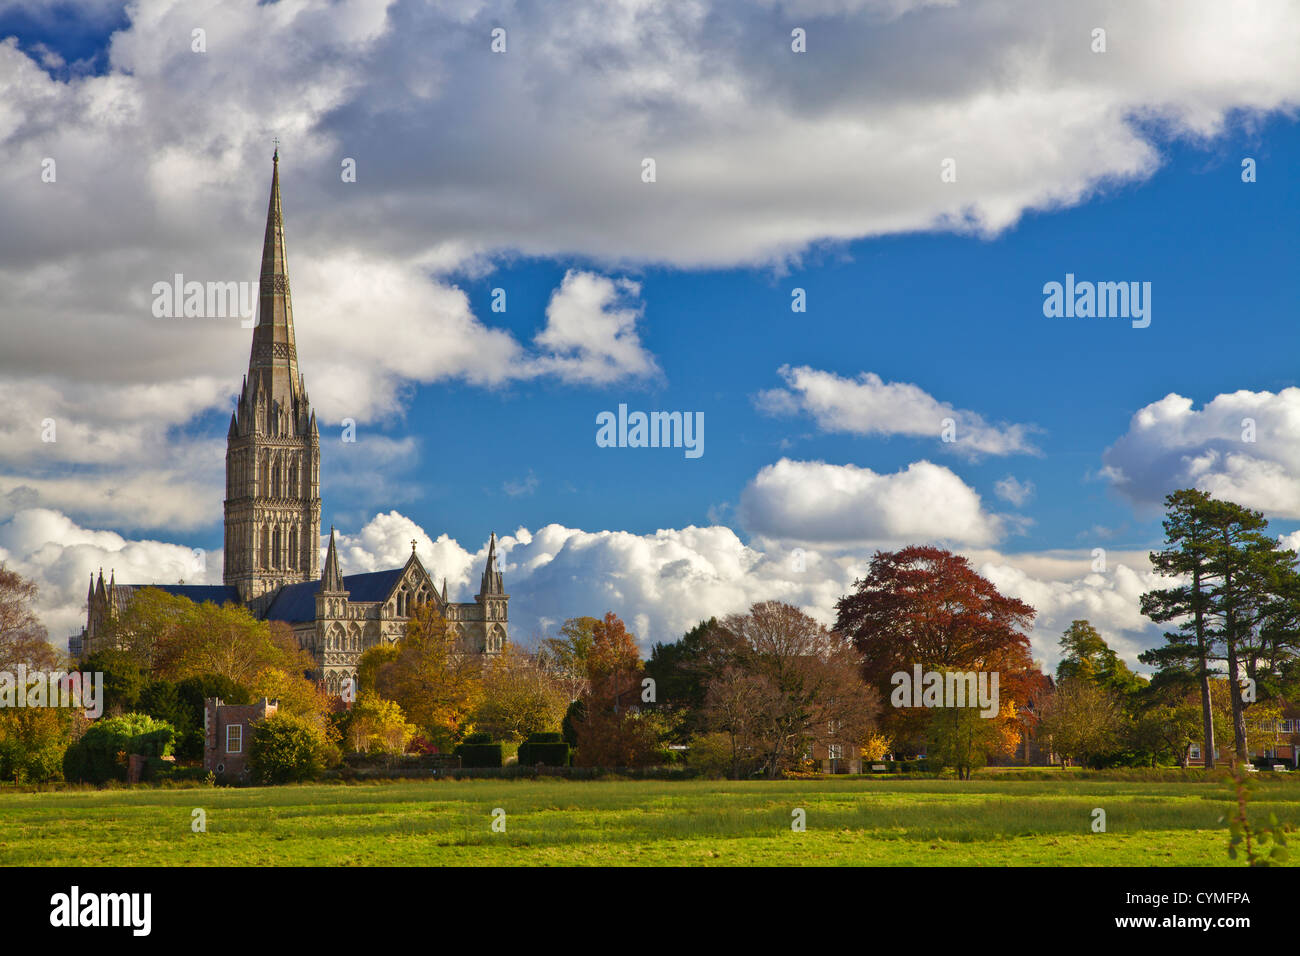 Vista otoñal de la torre medieval de la Catedral de Salisbury, Wiltshire, Inglaterra, Reino Unido. Versión mono en CYMFTD Foto de stock